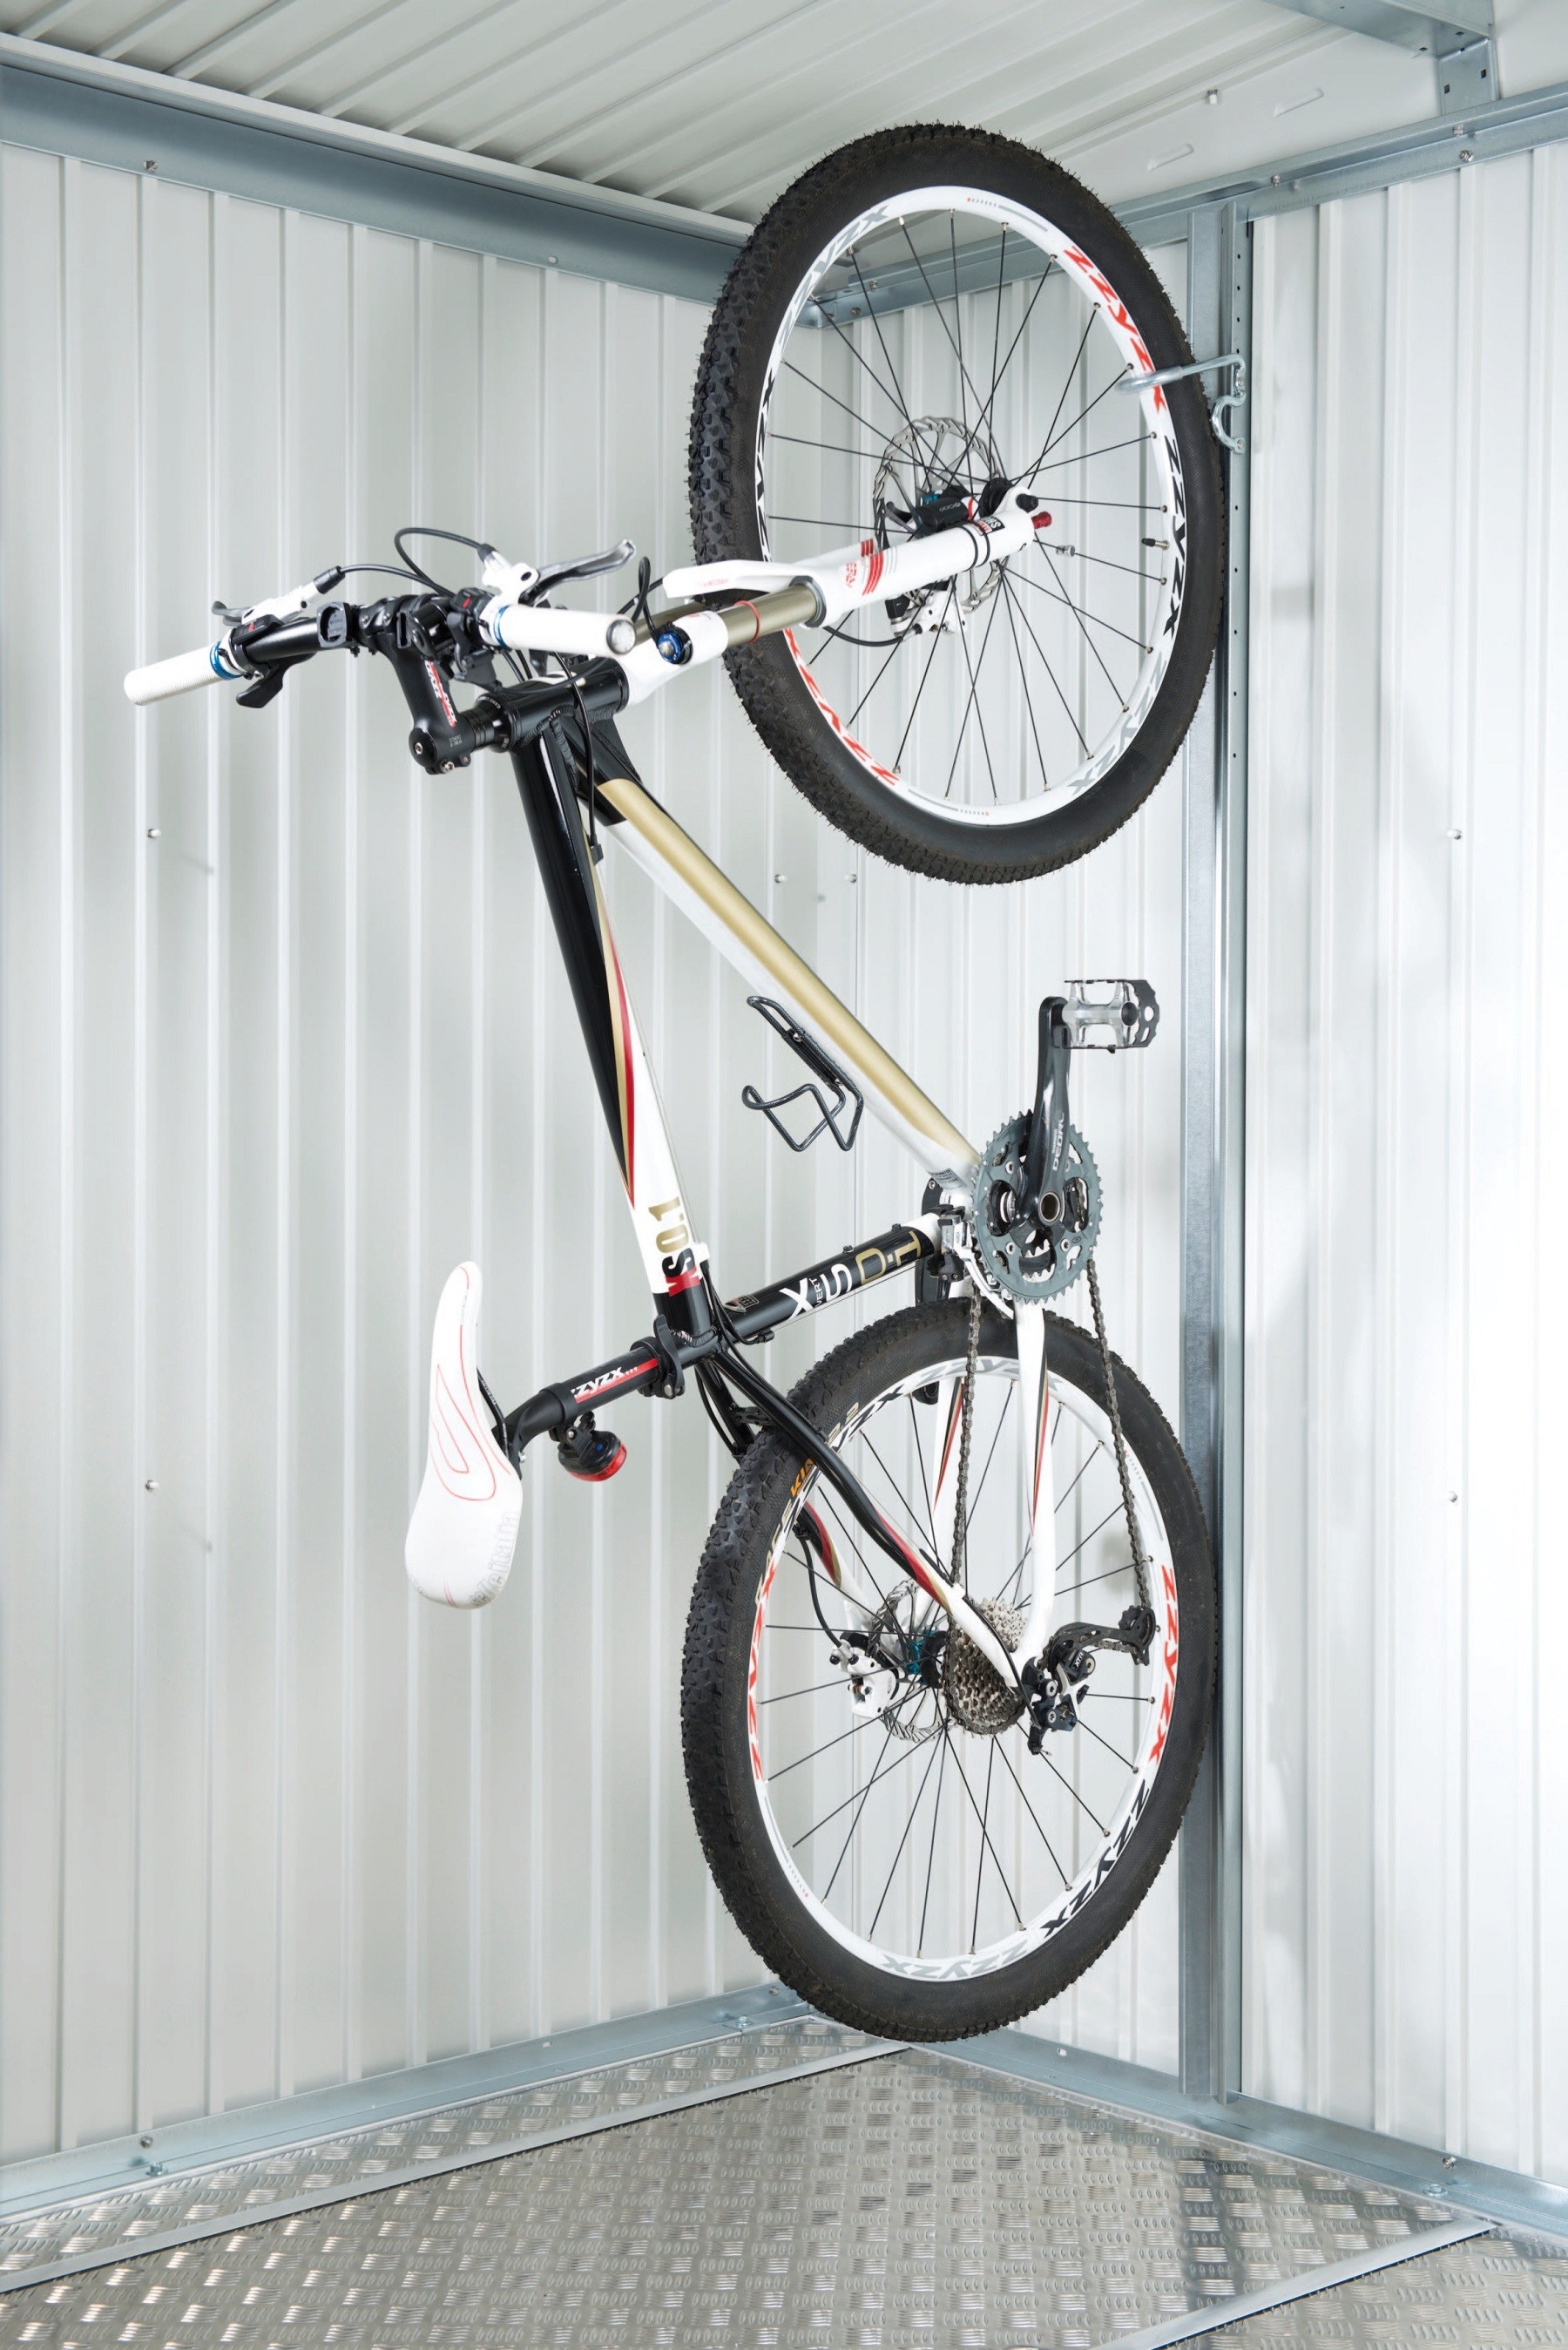 Crochets et supports de garage pour outils, vélos et autres